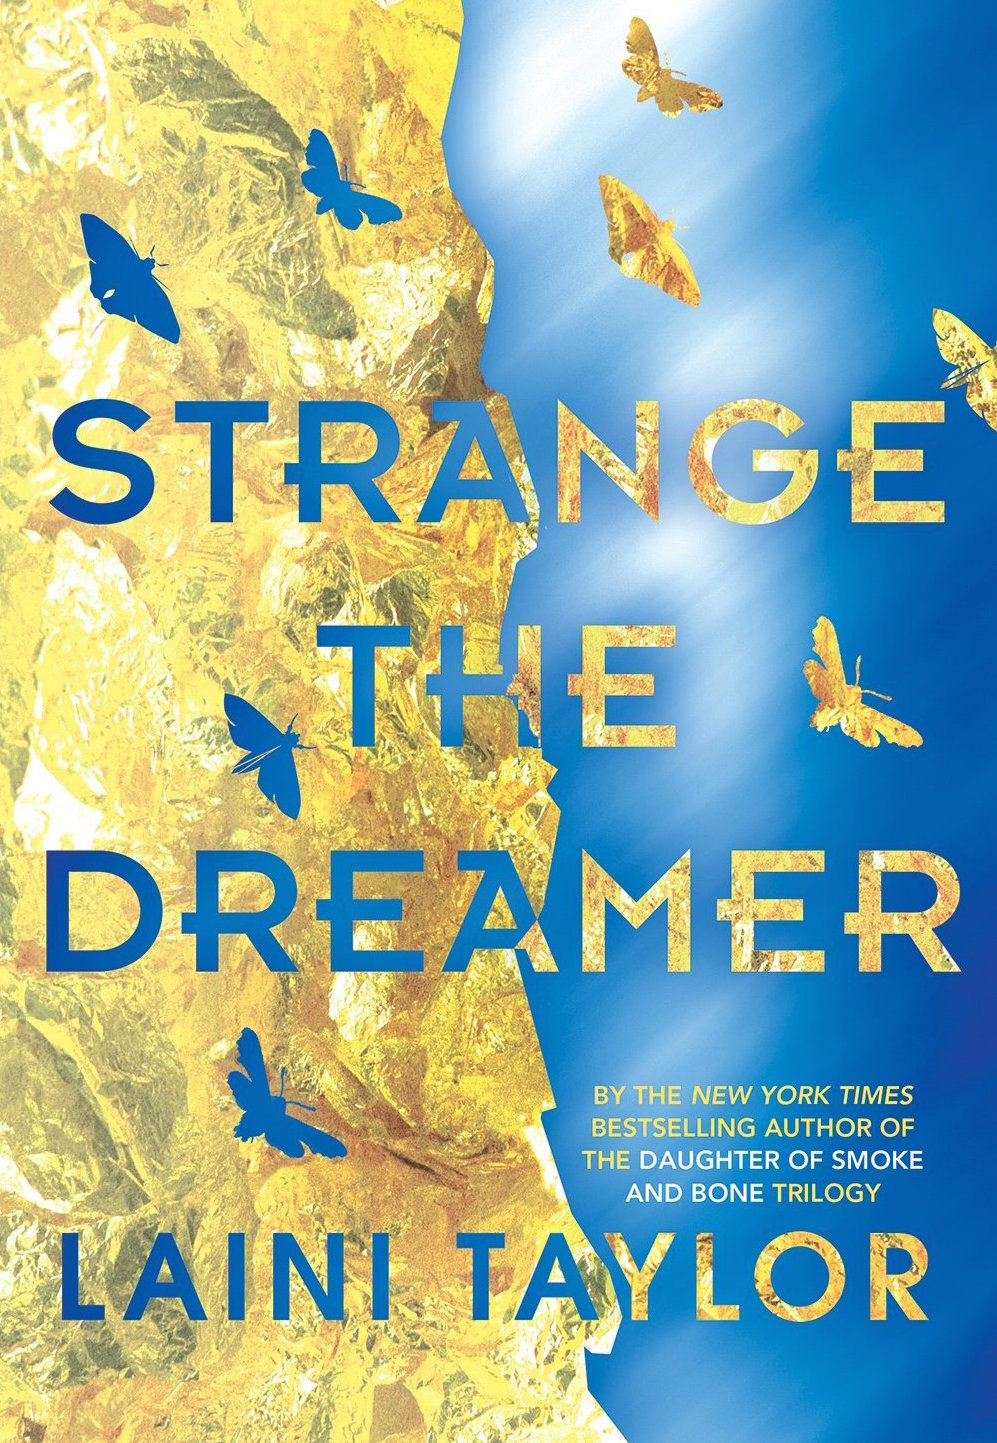 Strange the dreamer cover